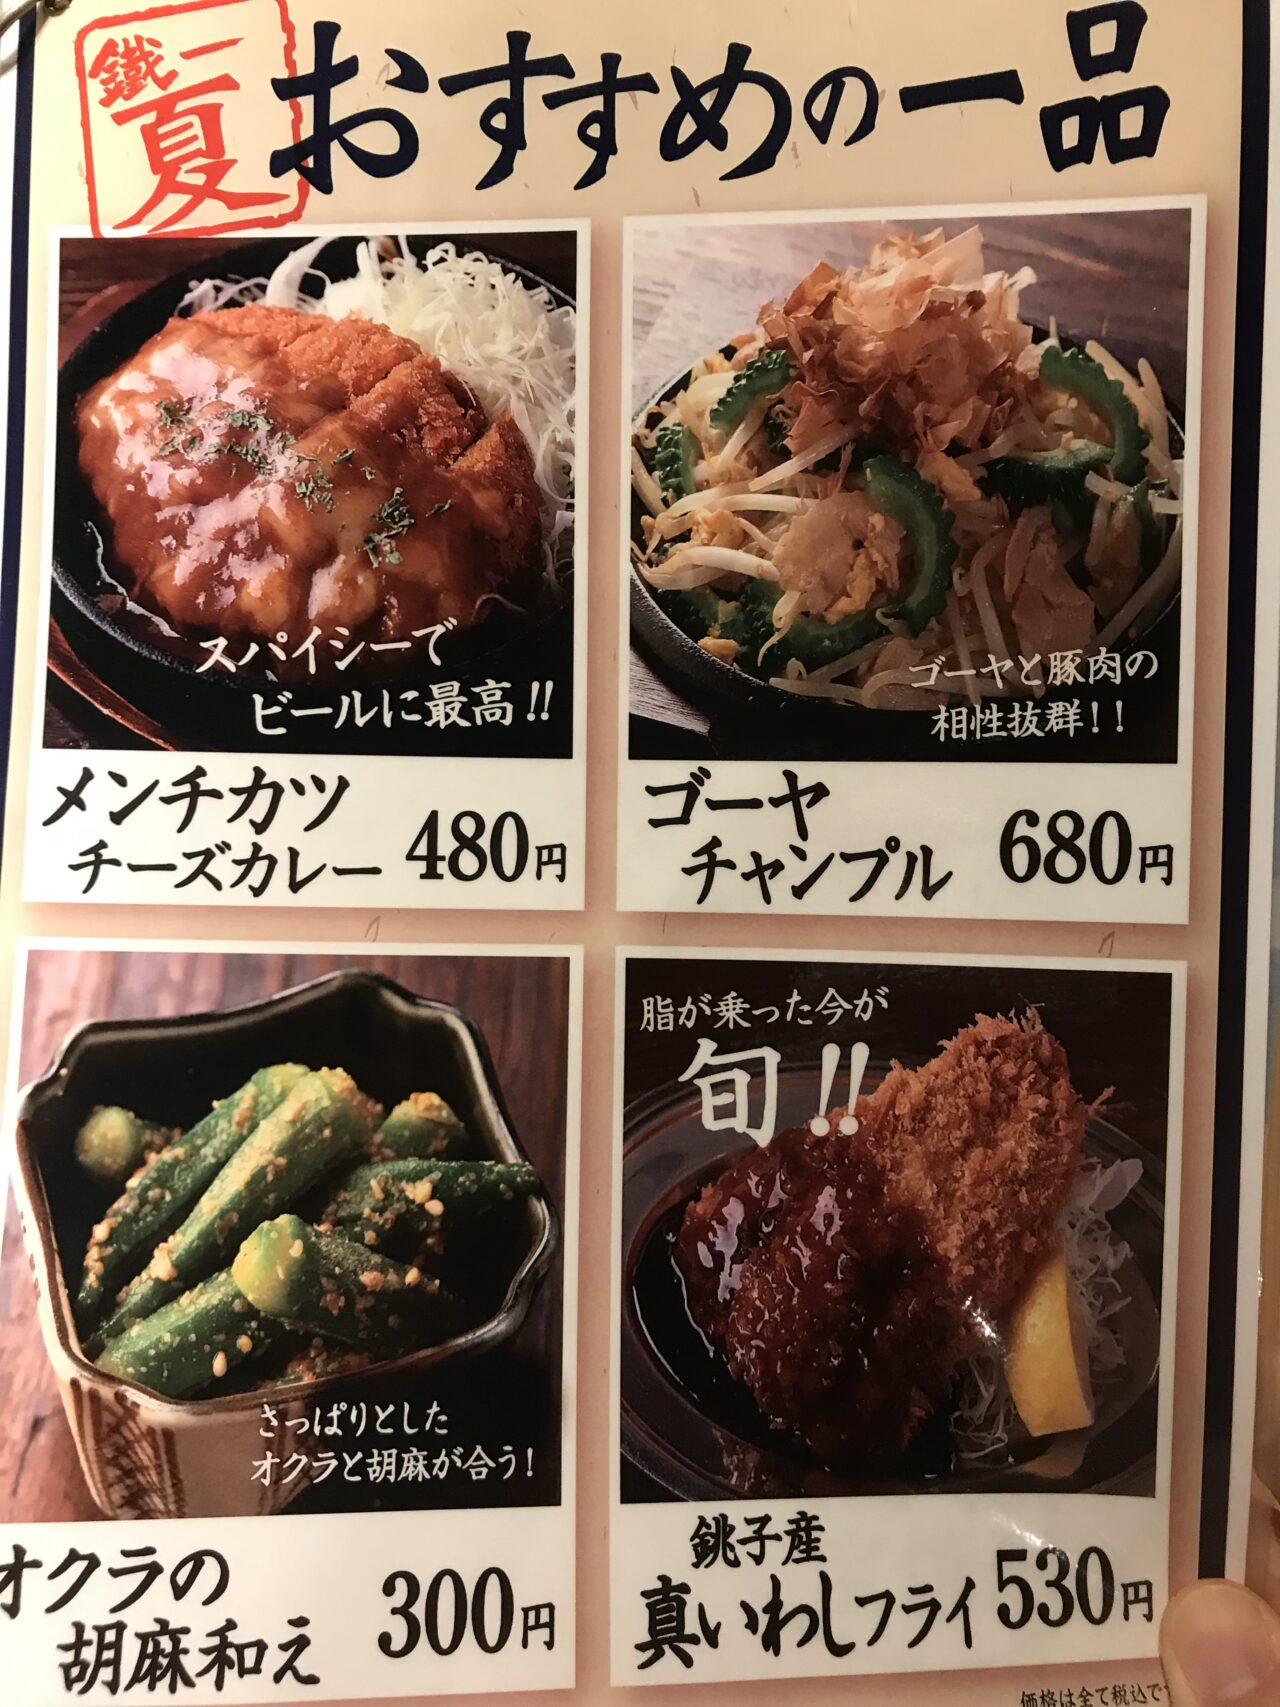 tetsu_menu1